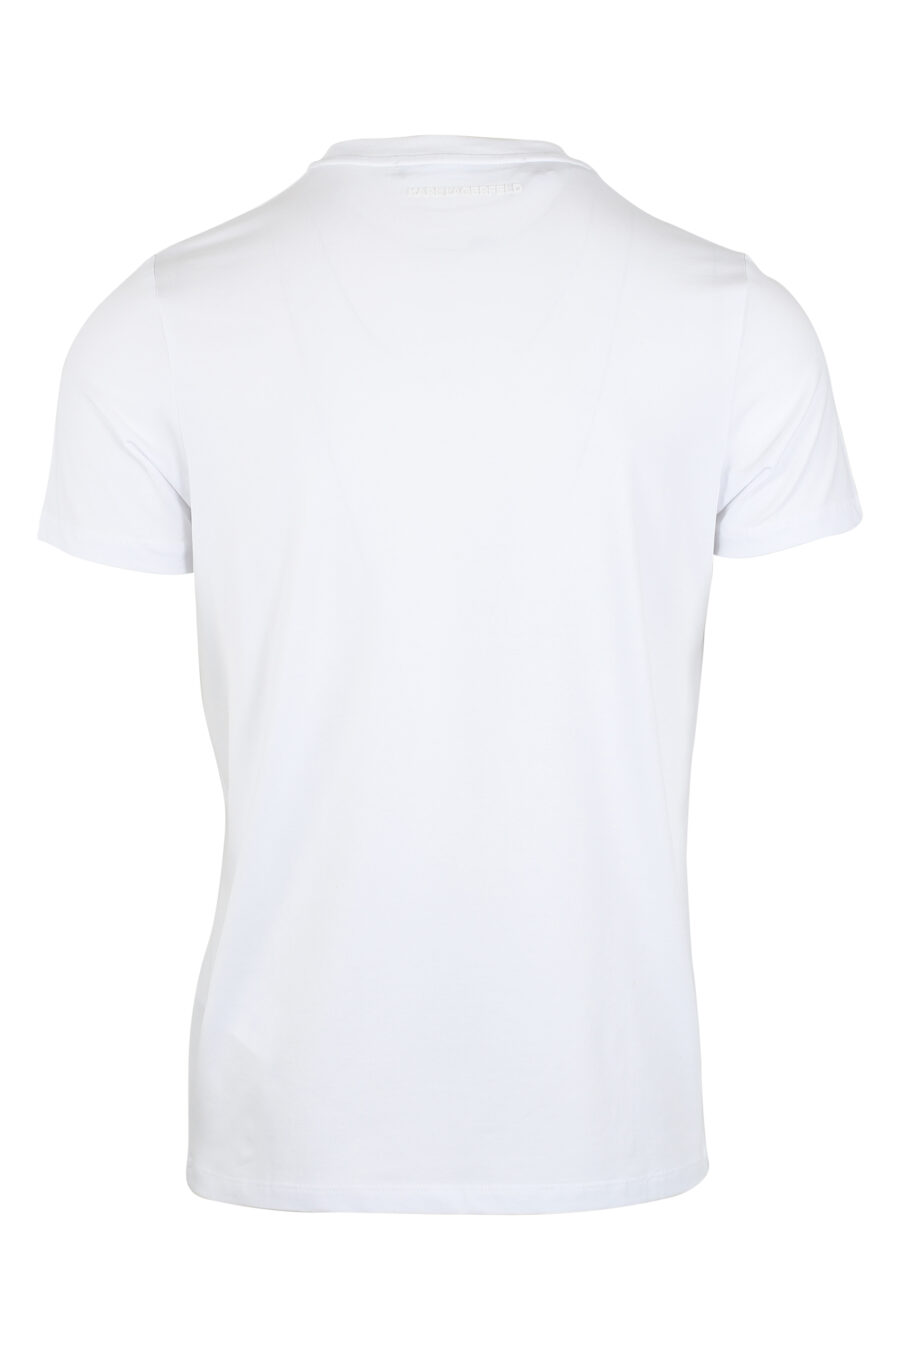 Camiseta blanca con maxilogo "karl" en contraste negro - IMG 9492